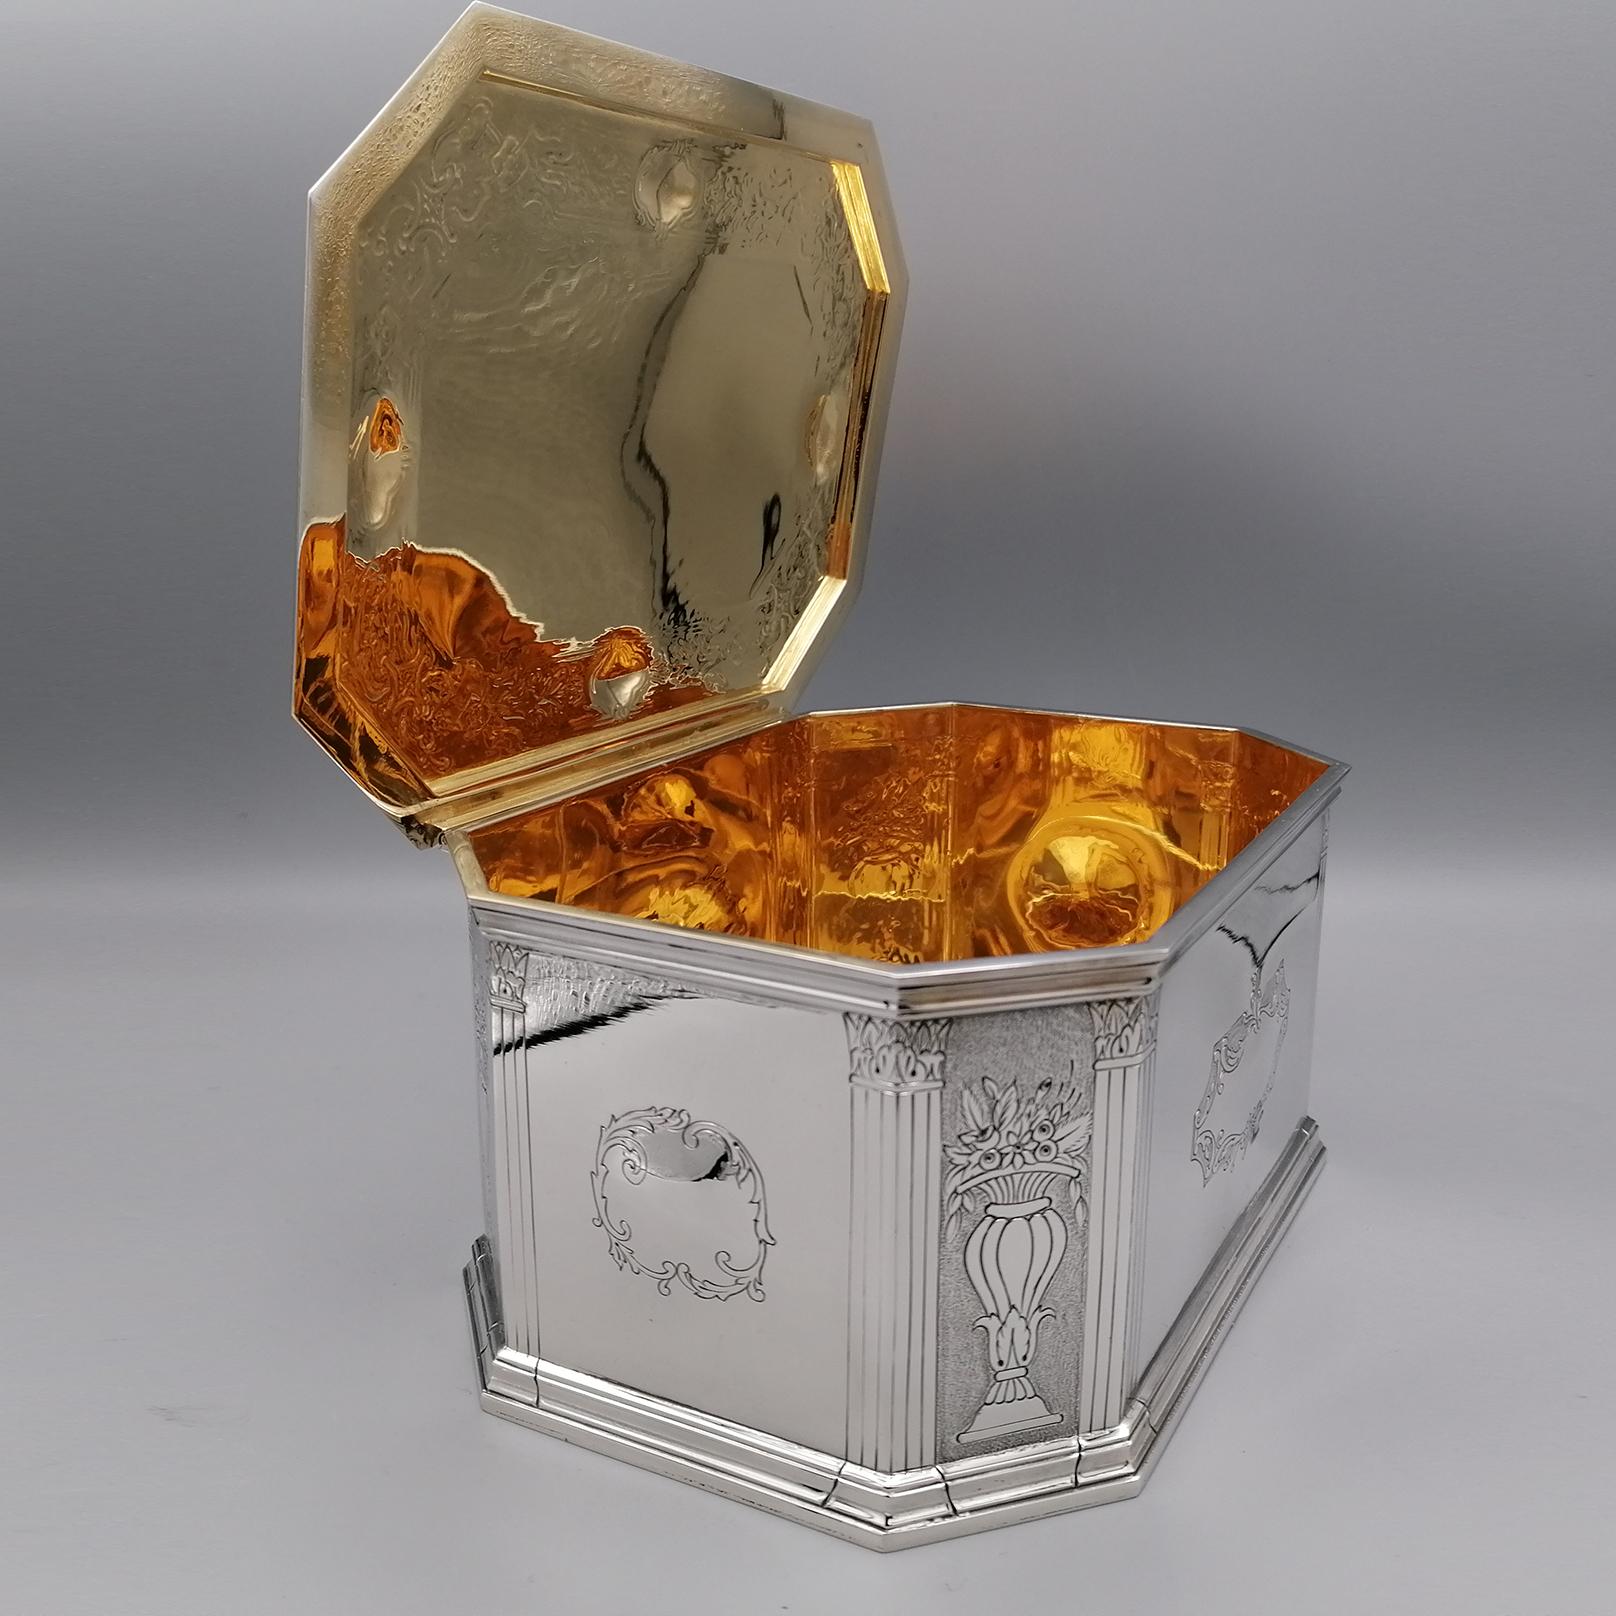 Rechteckige/achteckige Tischdose aus 925er Silber.
Die Schachtel wurde Ende des letzten Jahrhunderts in Florenz vollständig von Hand gefertigt.
Es ist mit floralen und abstrakten Motiven graviert und wurde mit der Rändeltechnik veredelt, die die